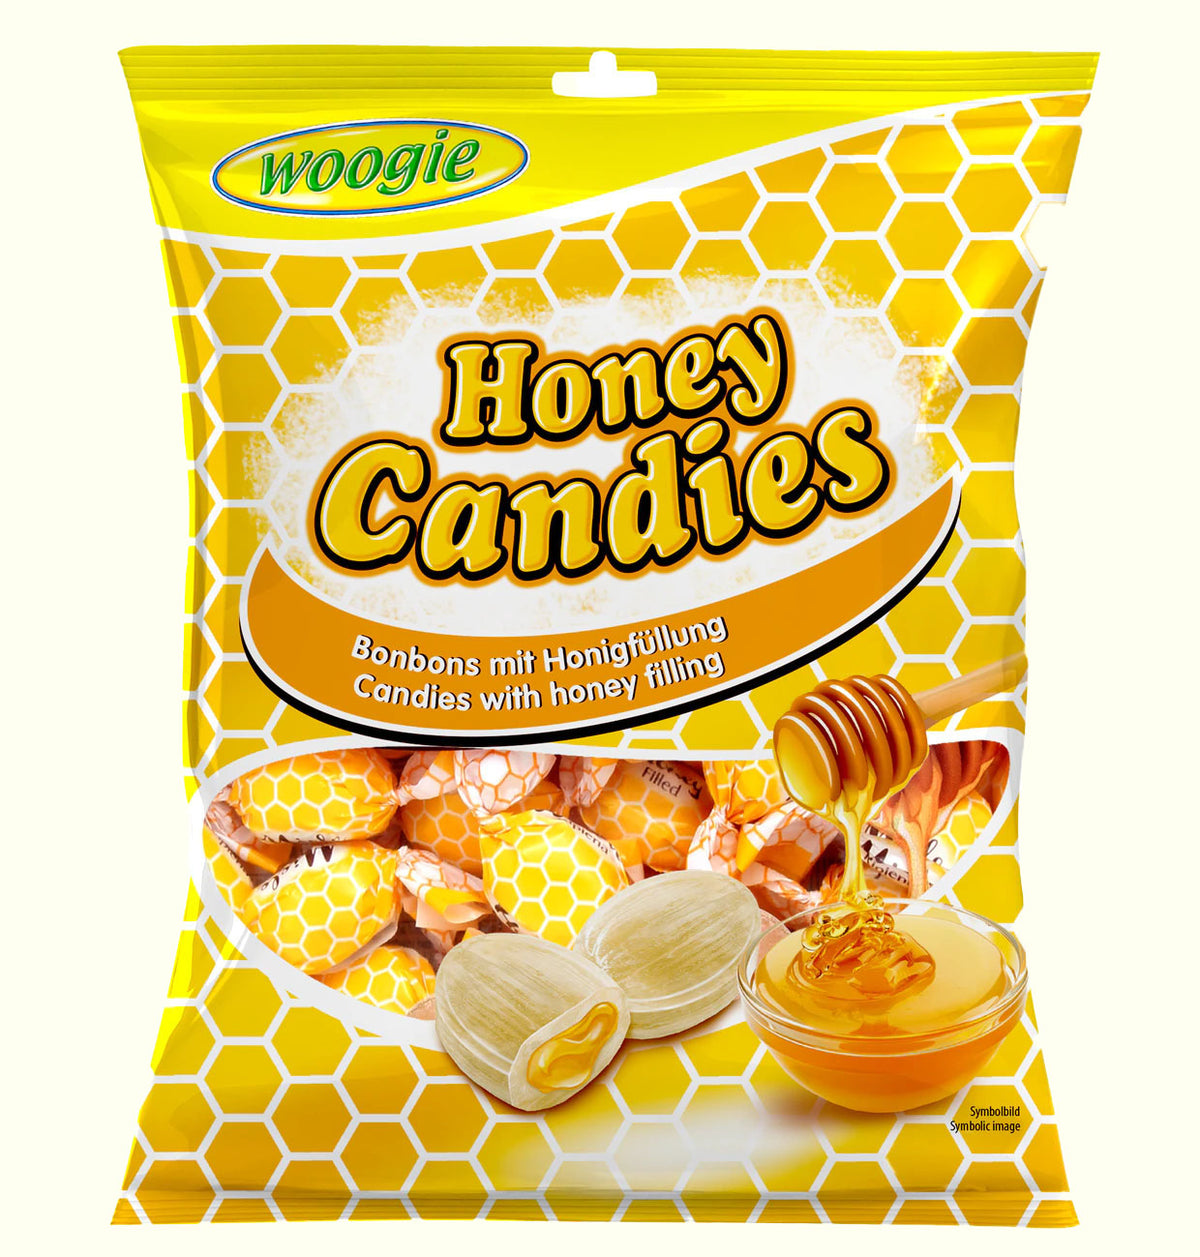 Woogie Honey Candies Honigbonbons 150g